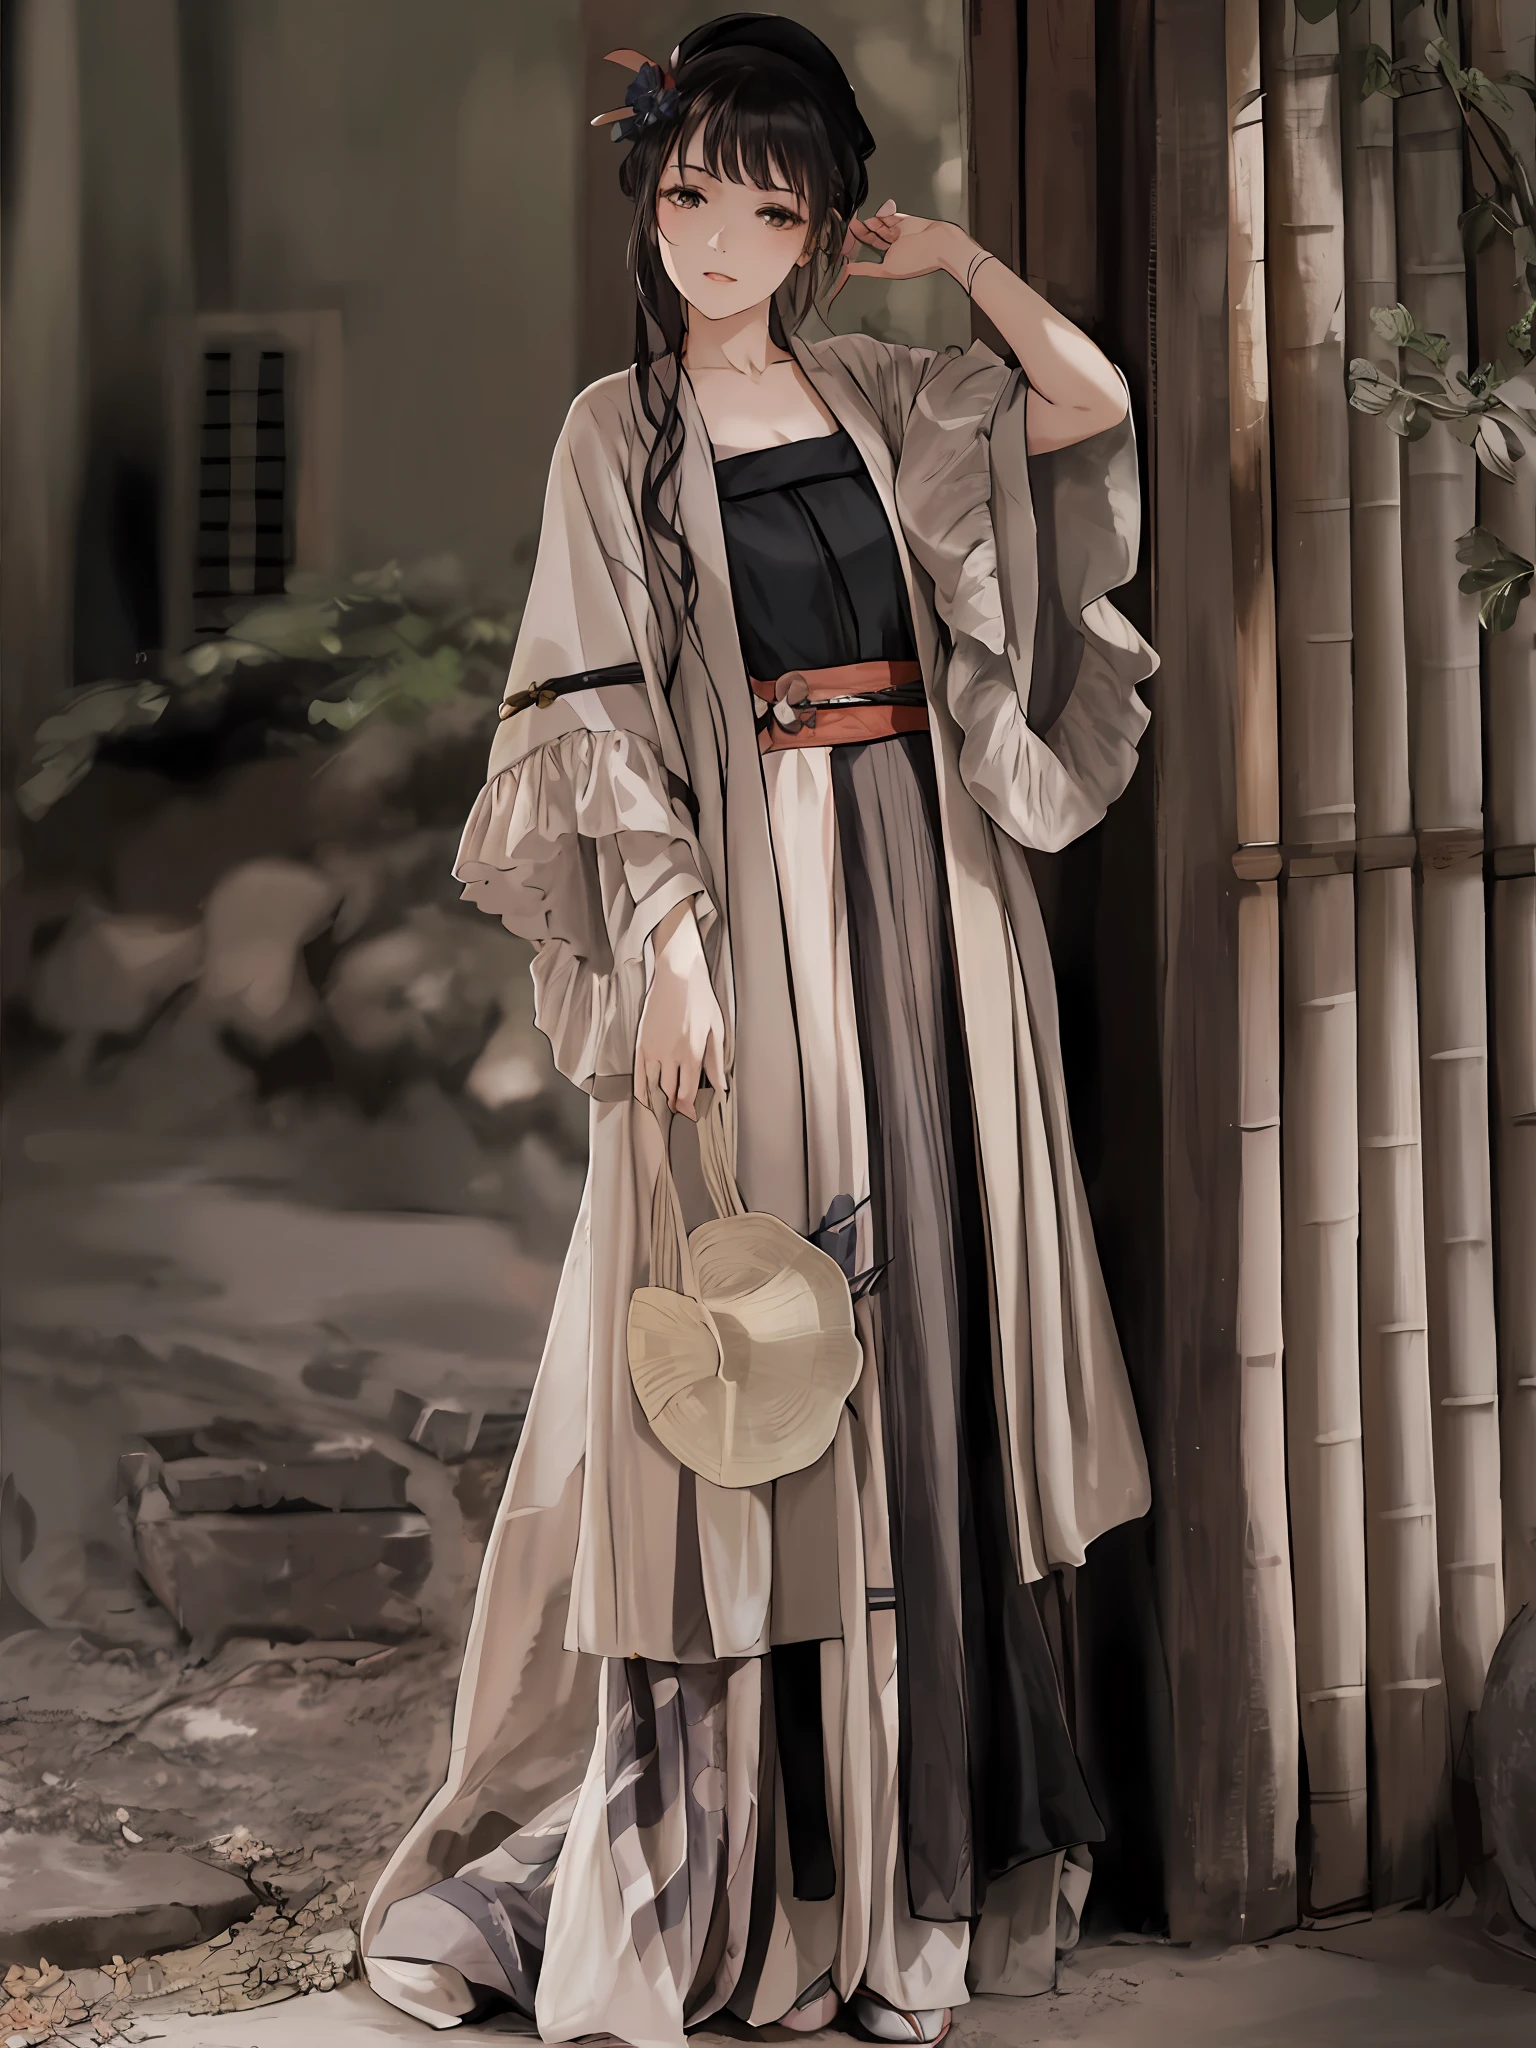 Arafed Frau in einem langen Kleid und Hut steht vor einer Bambus-Struktur, long beautiful flowing Kimono, hanfu, mit langen, fließenden Kleidern bekleidet, pale and coloured Kimono, Kimono, mehrlagiges Outfit, classic Kimono, Japanische Kleidung, mit antiker chinesischer Kleidung, edle Yukata-Kleidung, wearing Kimono, traditionelle chinesische Kleidung, hakama Kimono